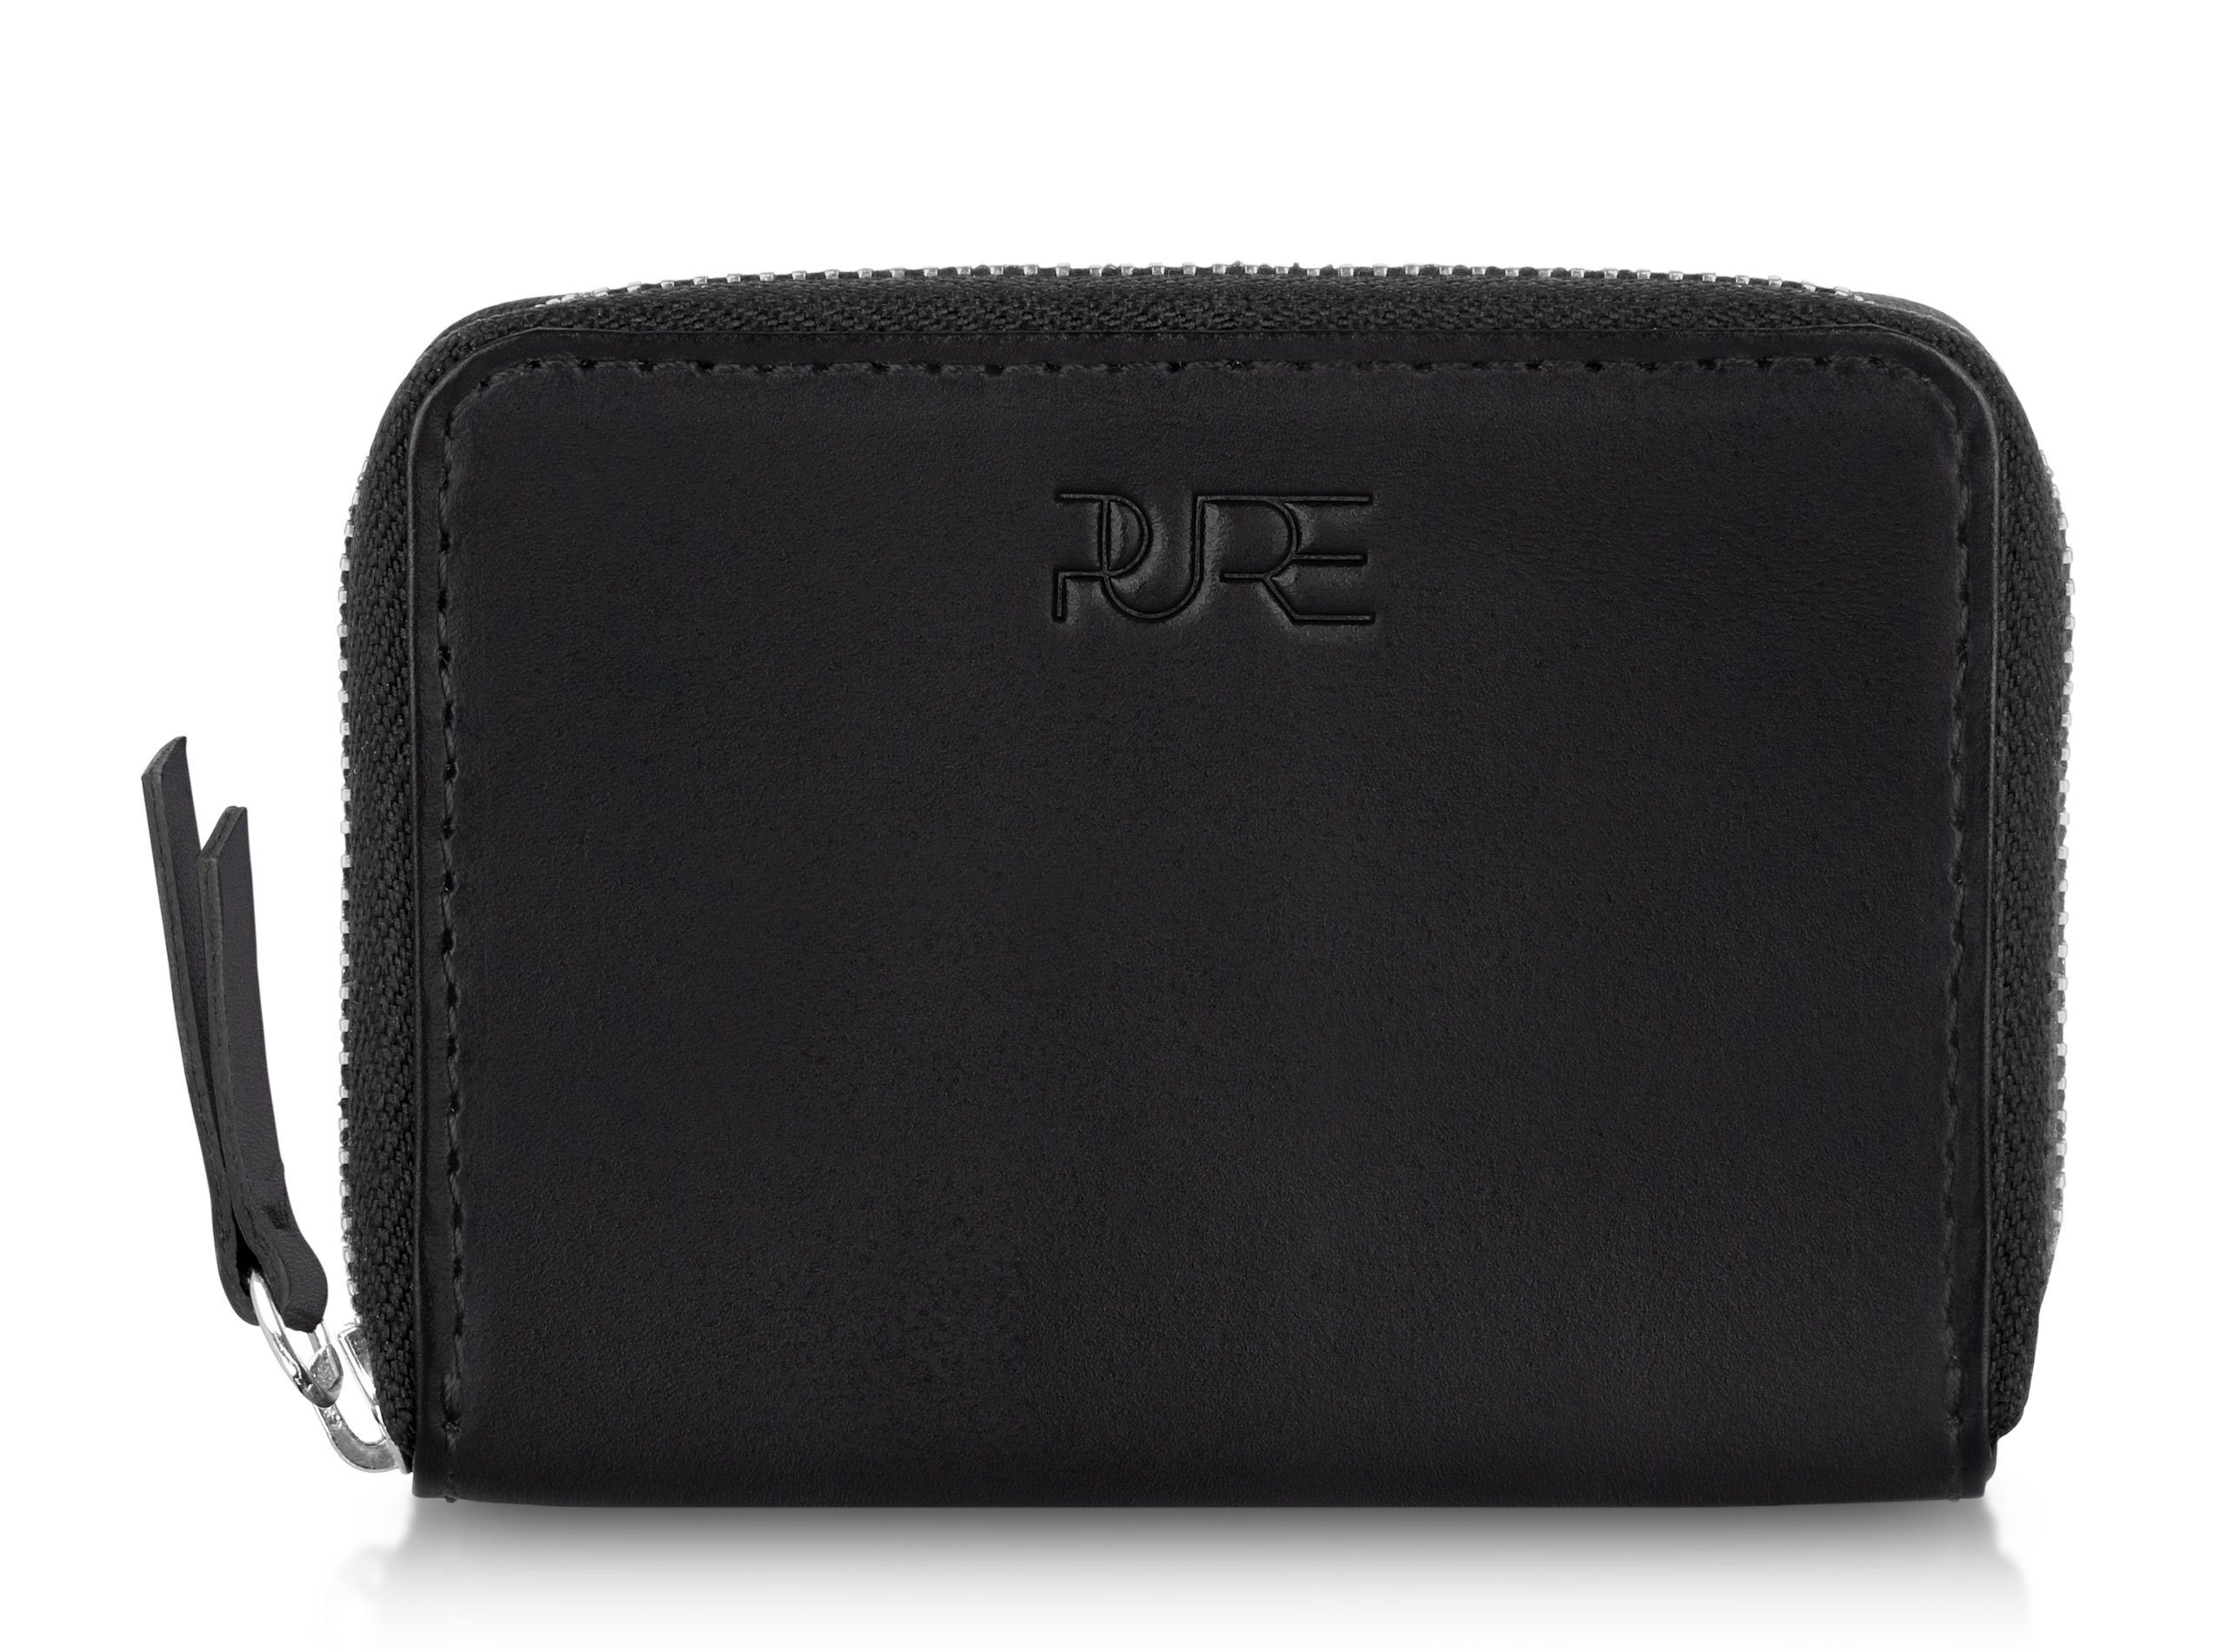 PURE Leather Studio Geldbörse Mini Geldbörse MAIA, Handgefertigte Damen Echtleder Portemonnaie Geldbeutel mit RFID Schutz